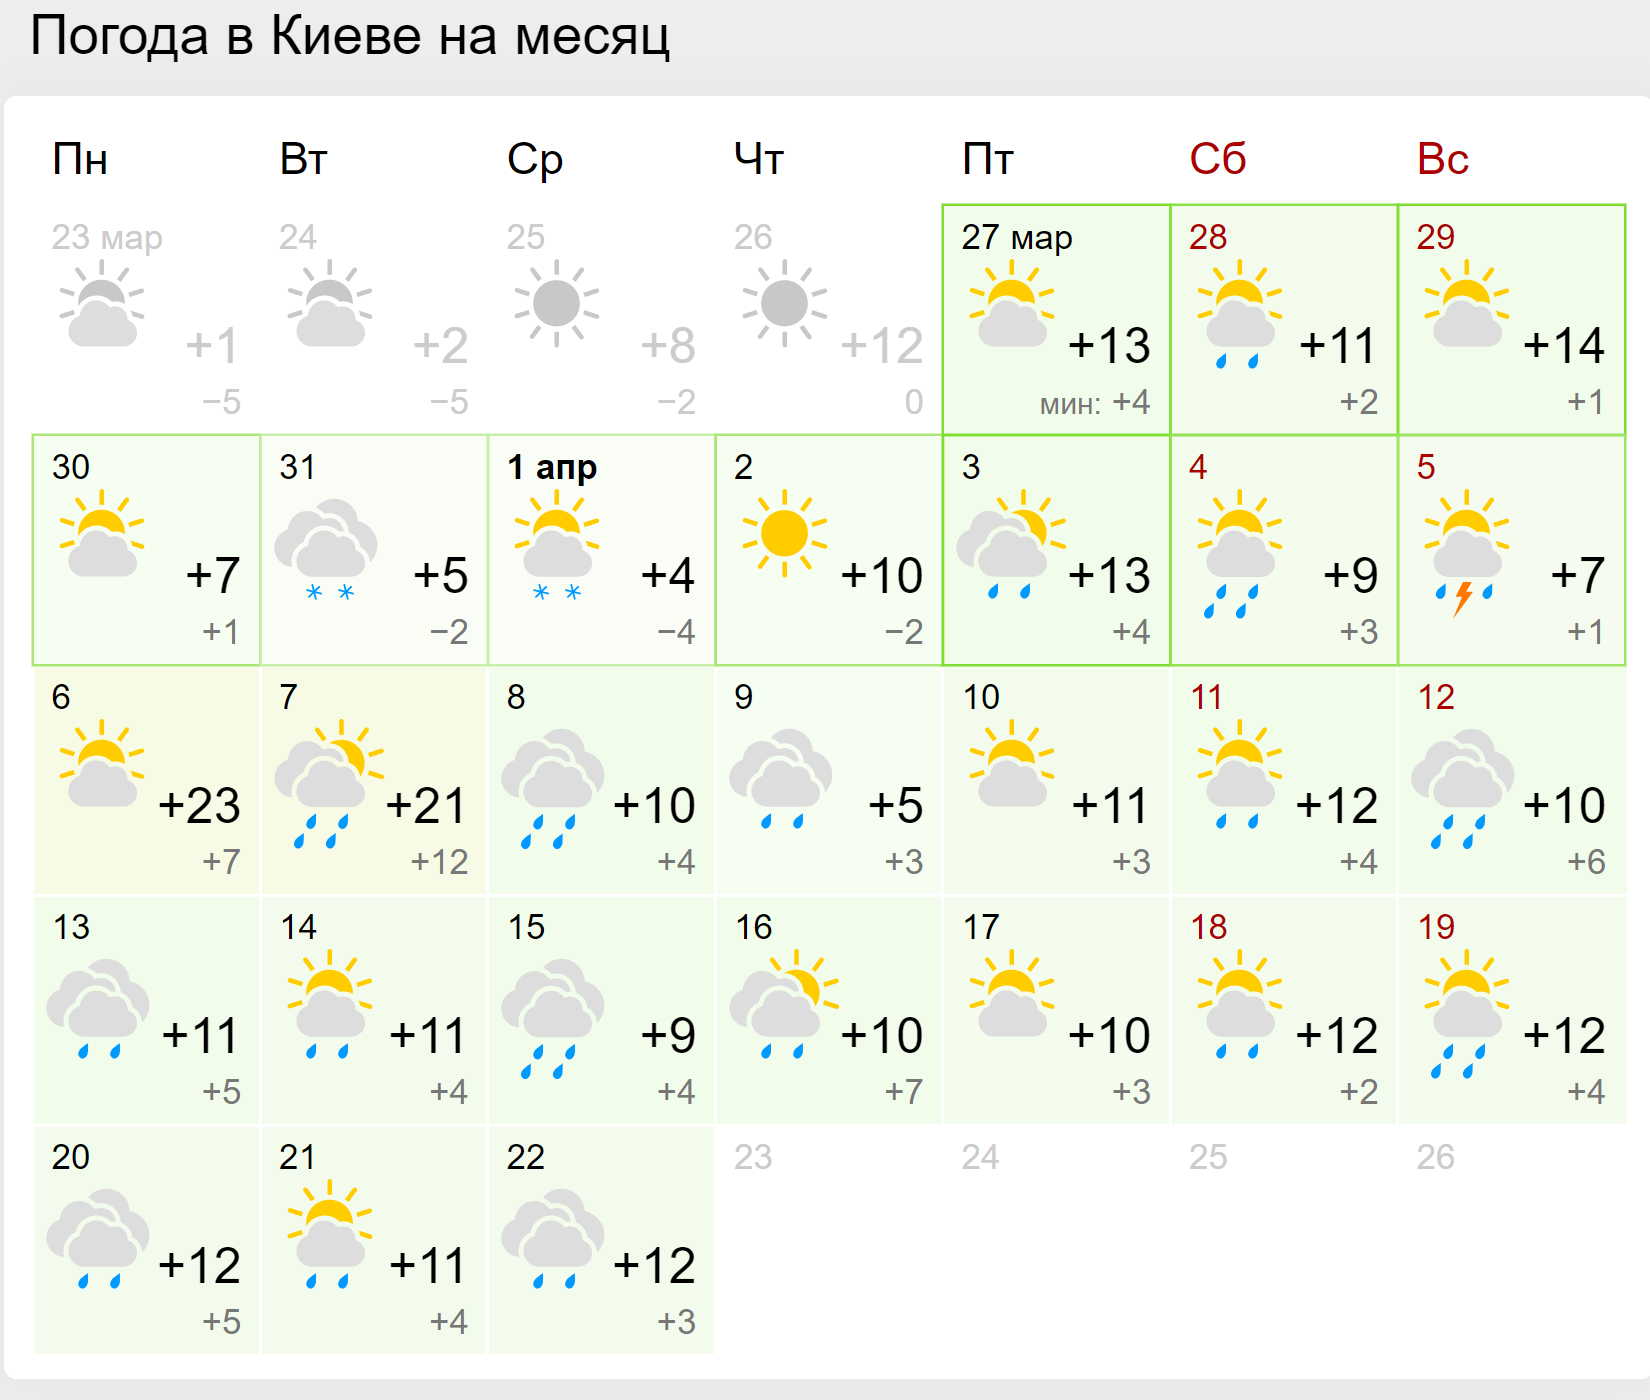 Прогноз погоды на апрель 2020 в Киеве